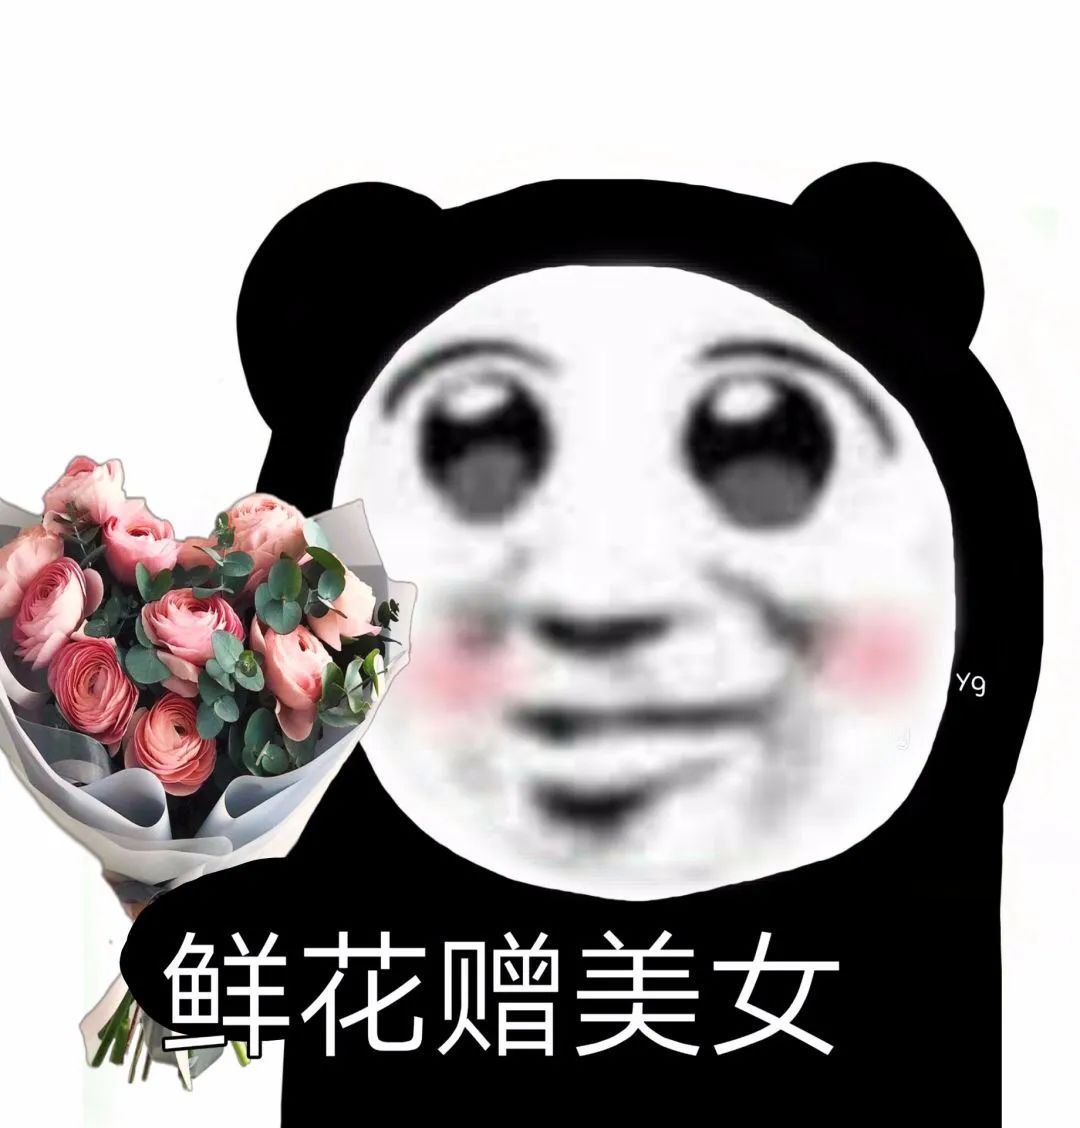 熊猫表情包#鲜花赠美女